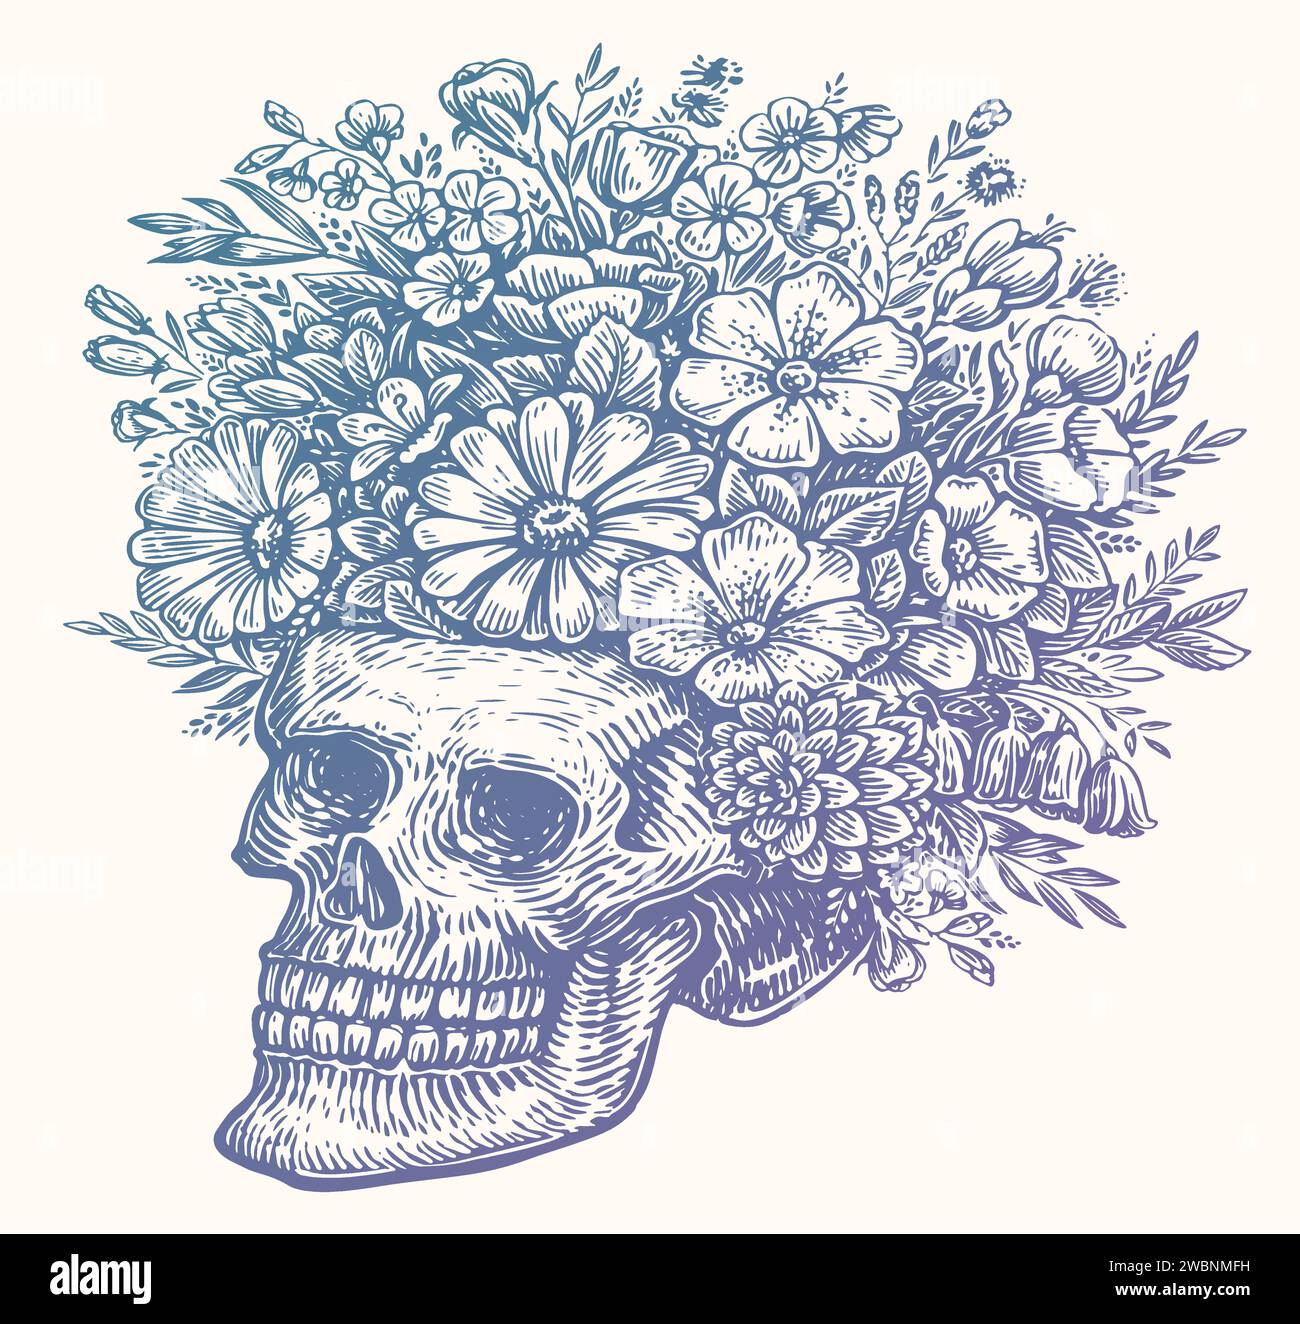 Crâne humain avec des fleurs, dessin d'esquisse. Illustration vectorielle dessinée à la main isolée sur fond blanc Illustration de Vecteur